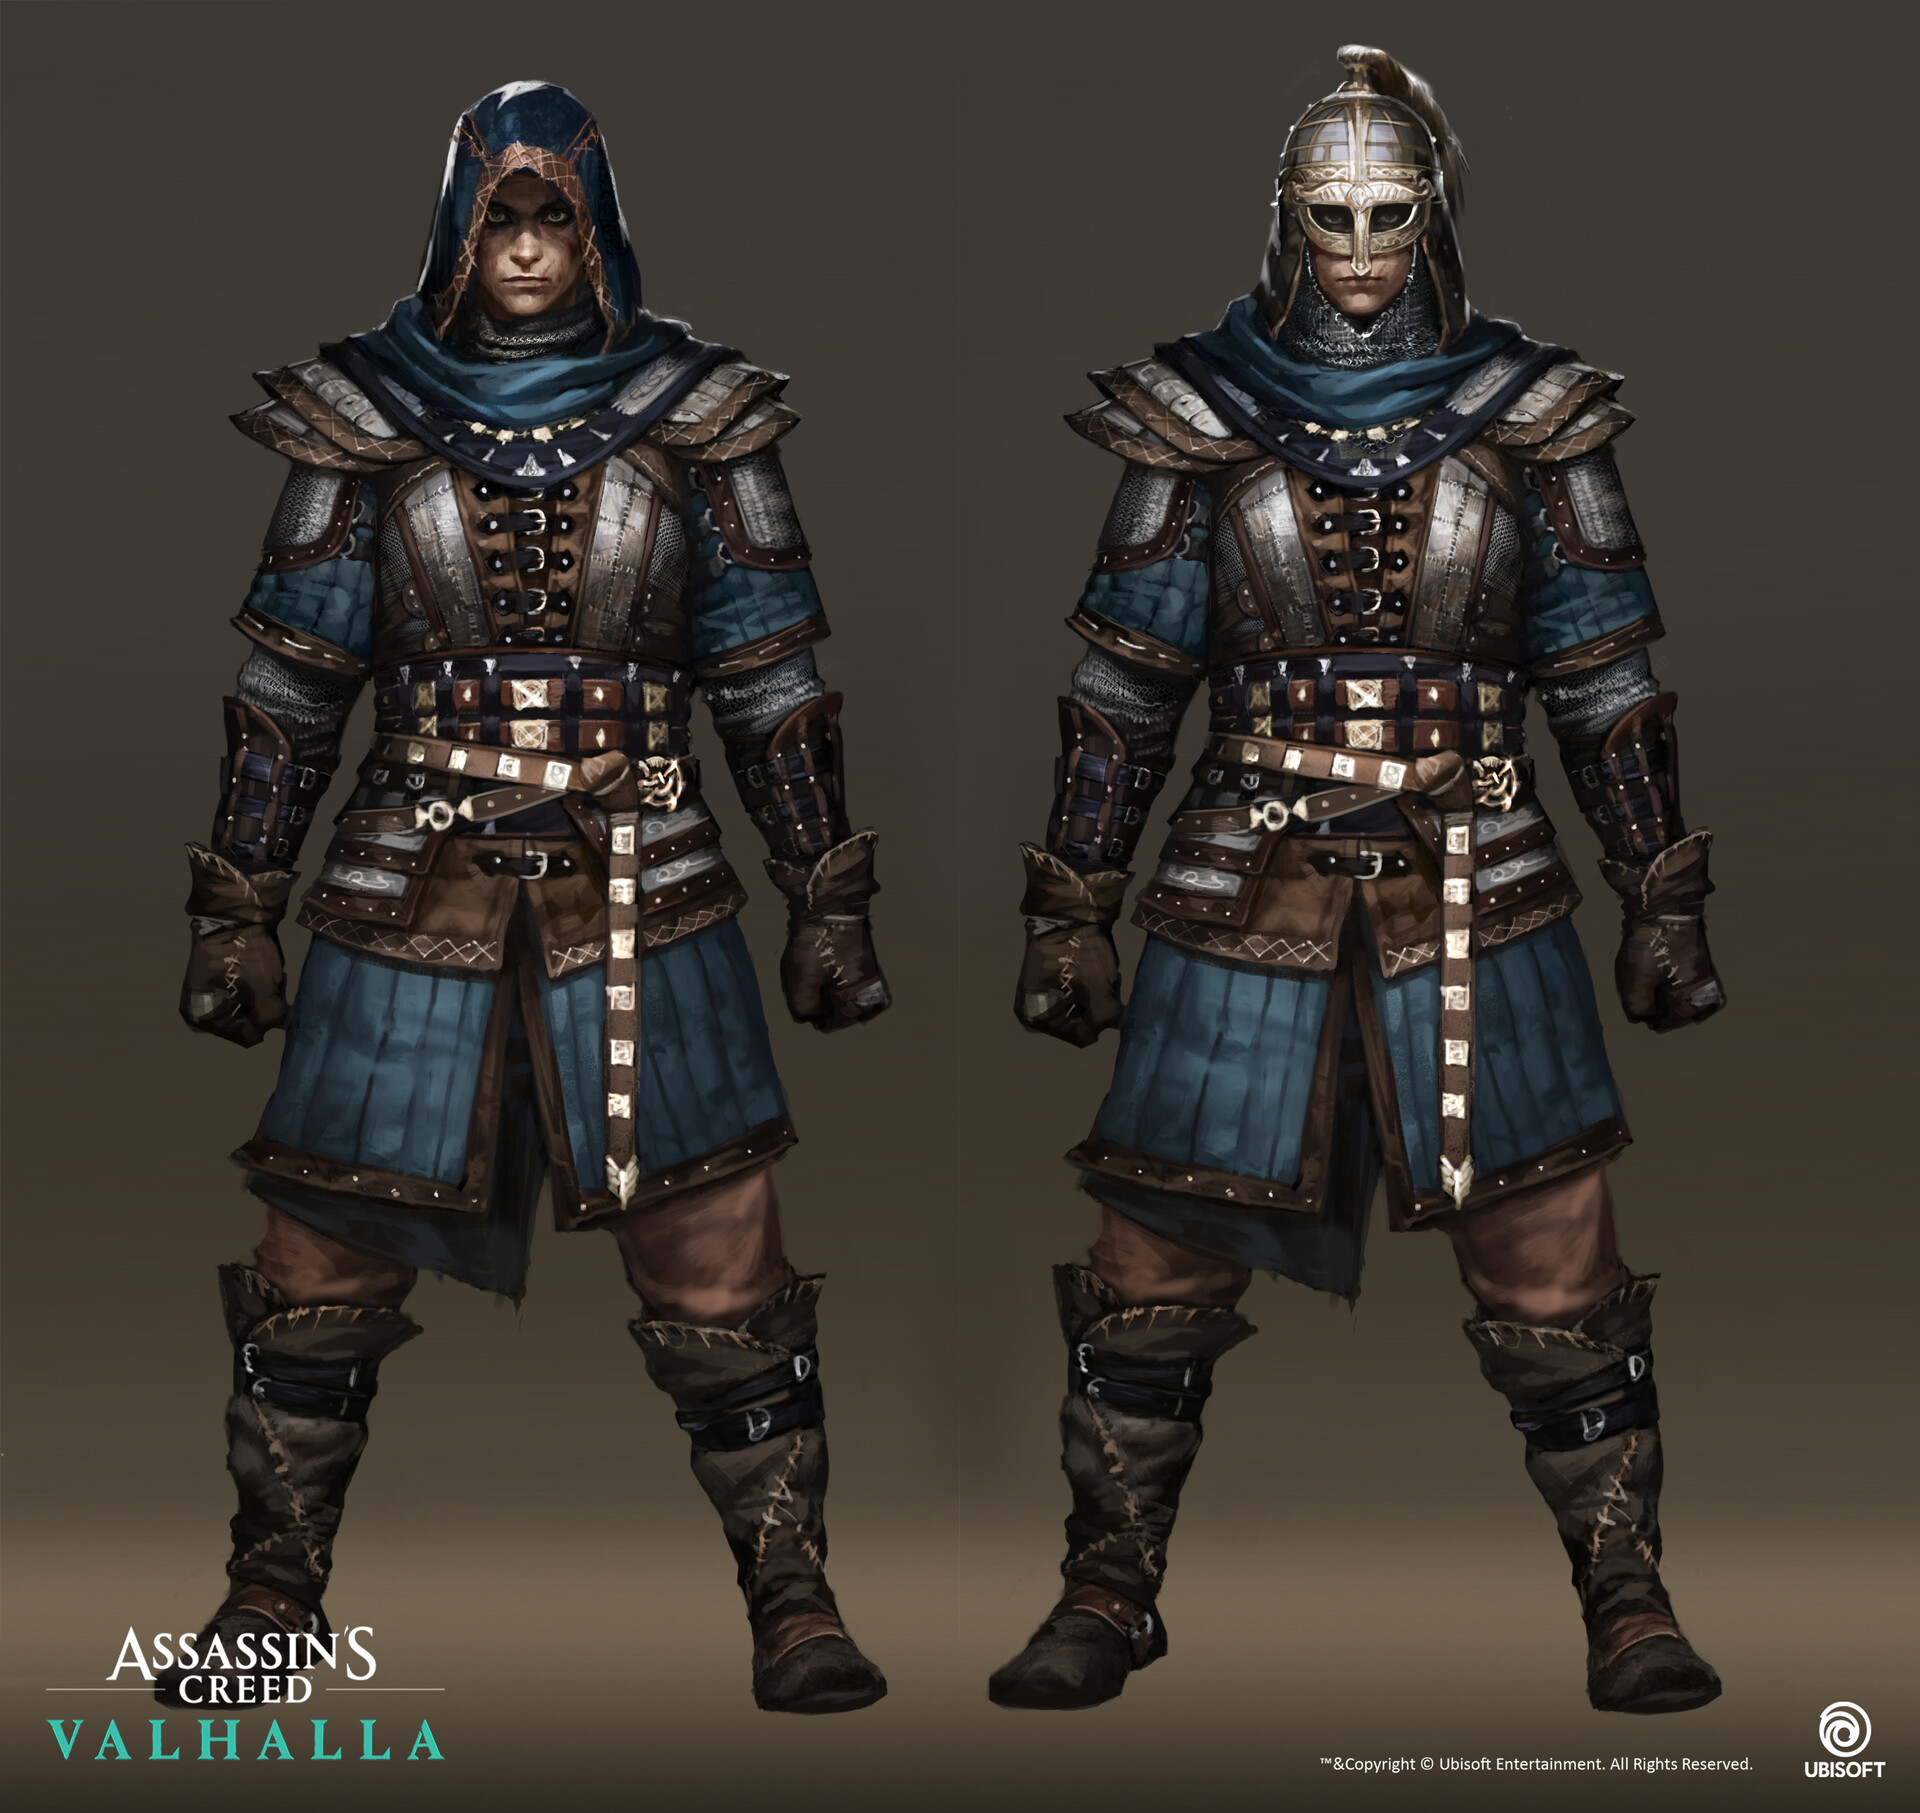 Yelim Kim - Assassin's Creed Valhalla - Eivor warrior outfit